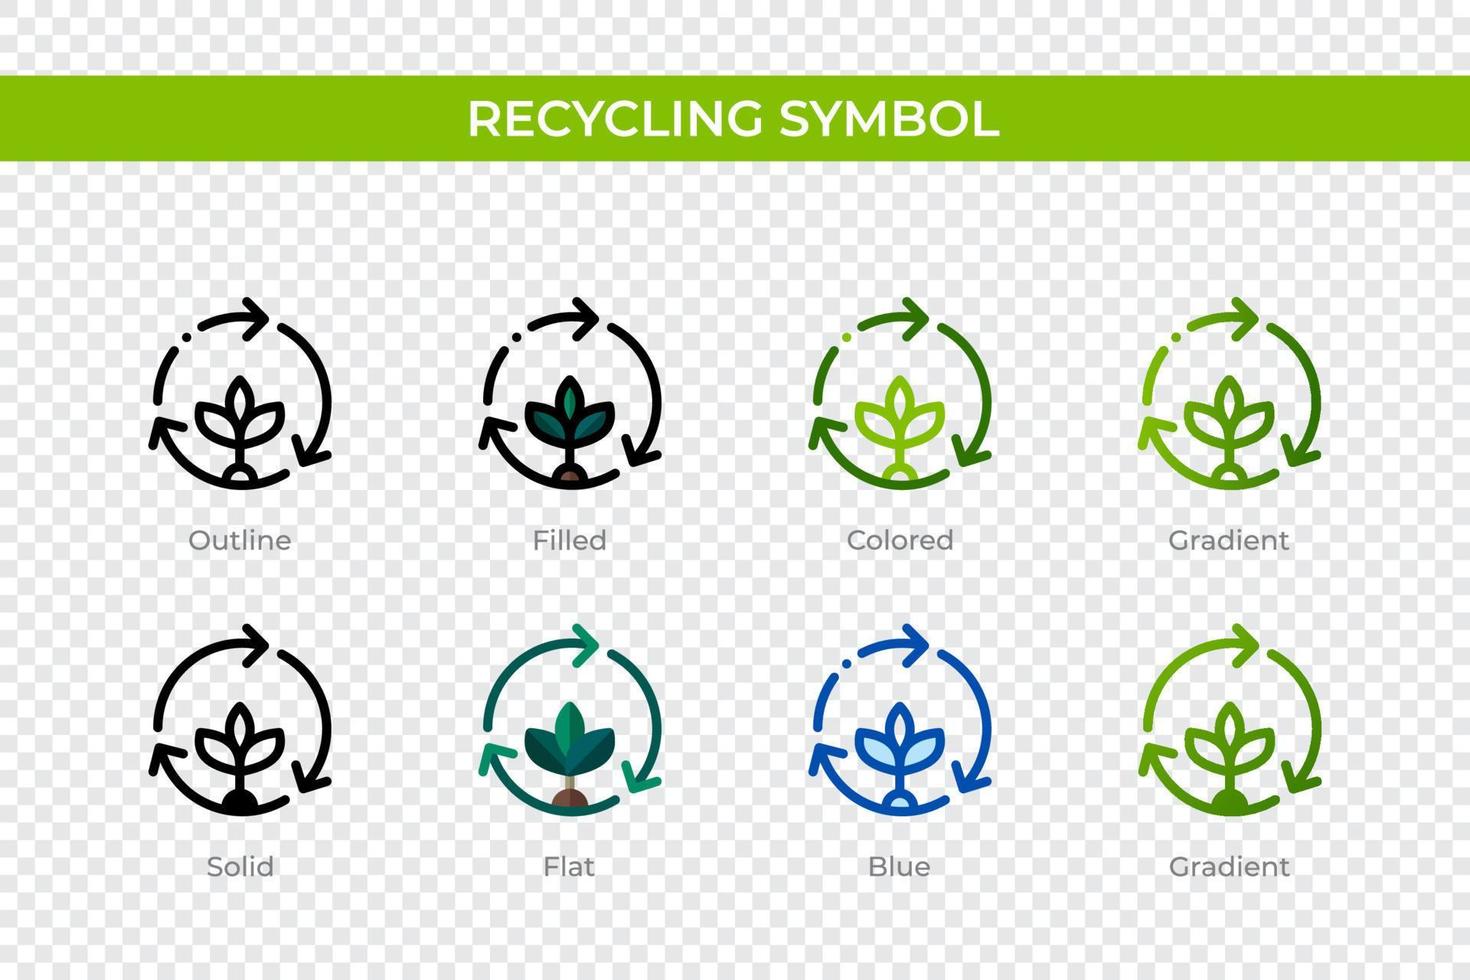 recycling symboolpictogram in verschillende stijl. recycling symbool vector iconen ontworpen in omtrek, solide, gekleurd, gevuld, verloop en vlakke stijl. symbool, logo afbeelding. vector illustratie